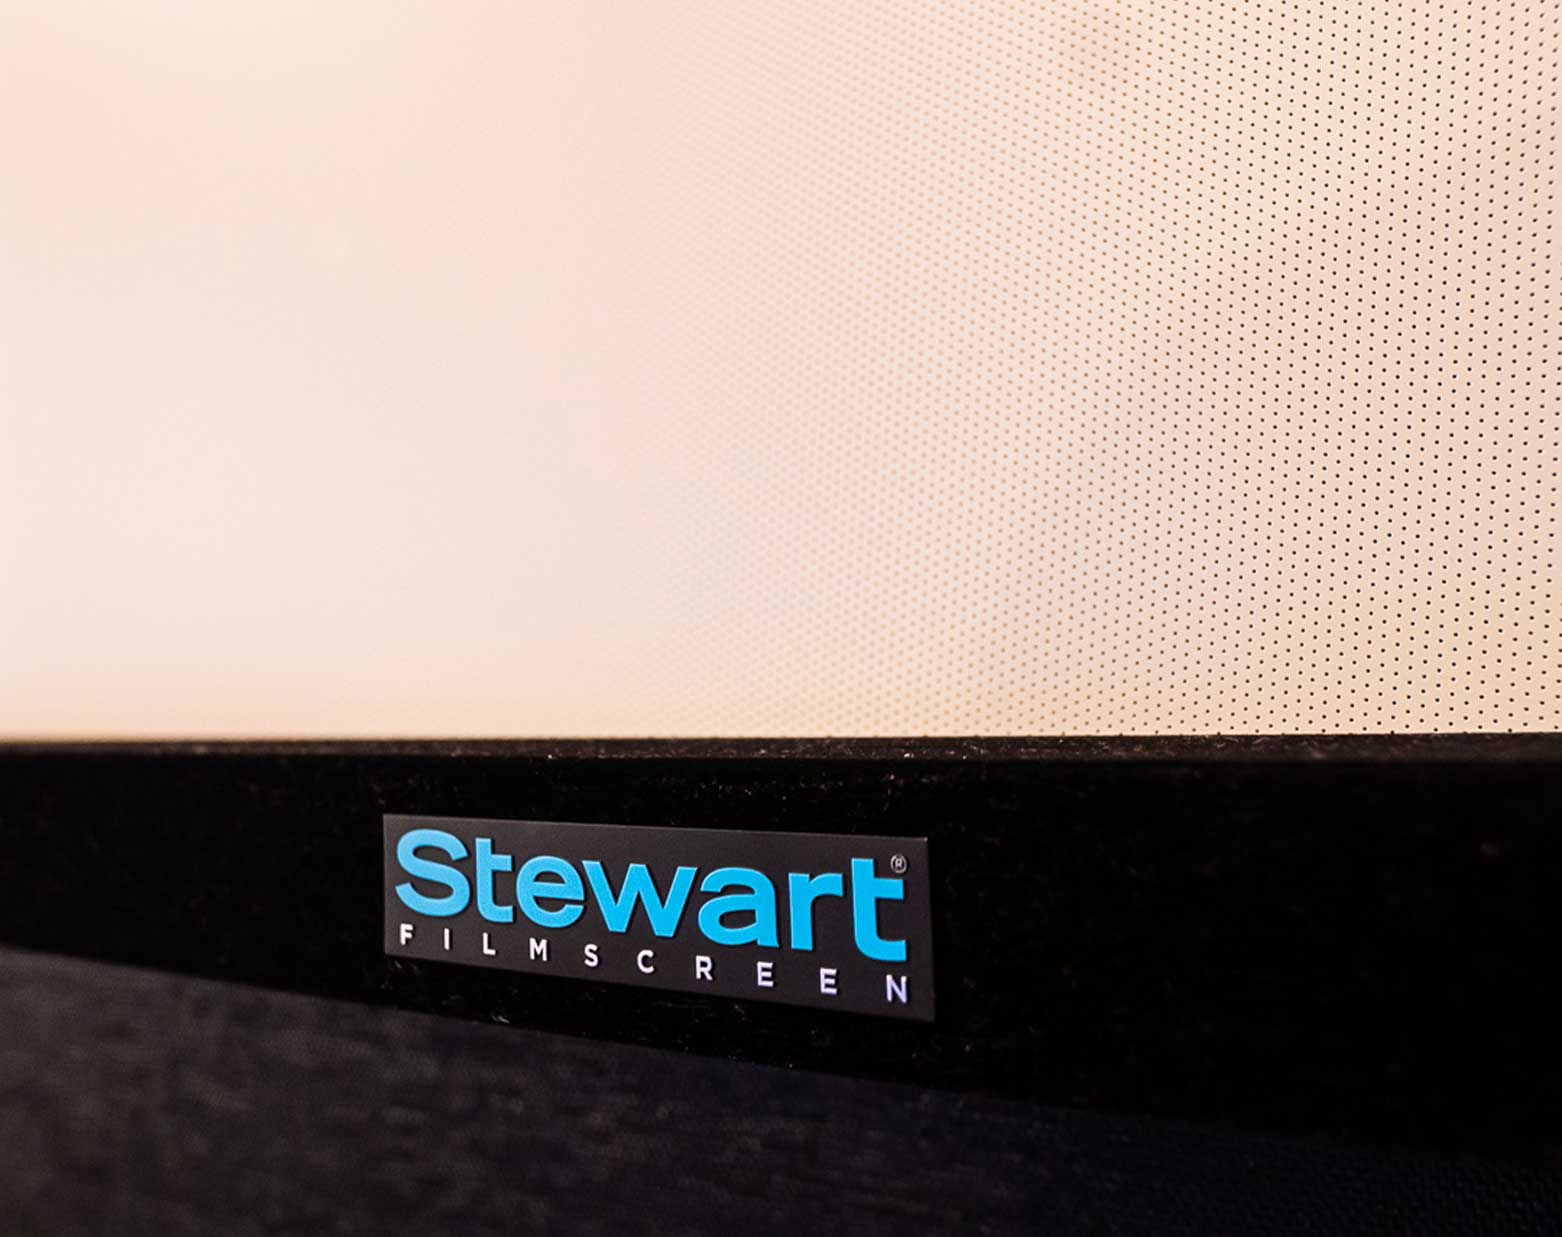 Photo of Stewart Filmscreen Wallscreen Deluxe showing logo